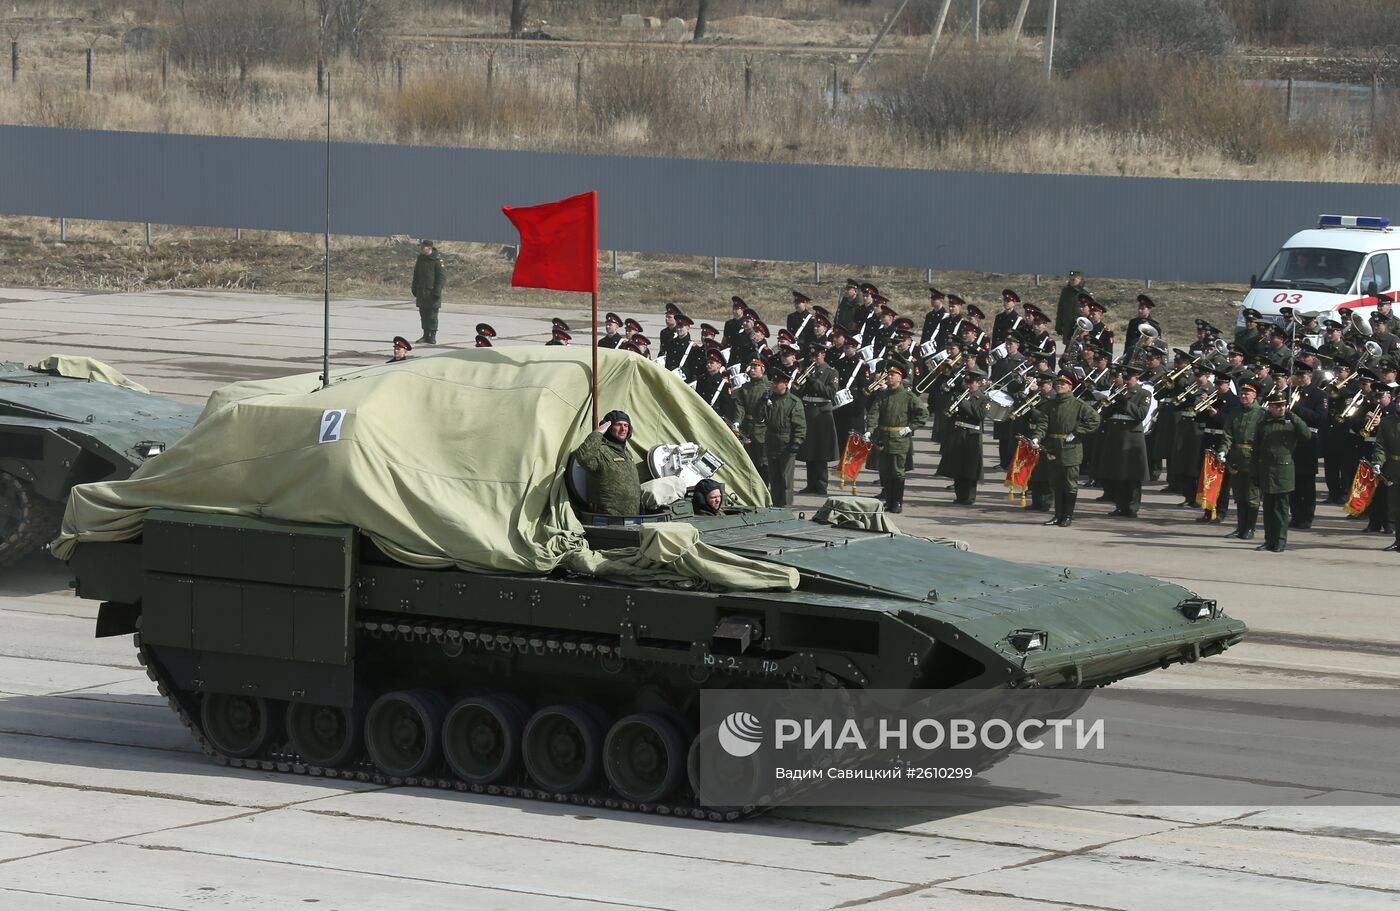 Новая военная техника, которая будет участвовать в параде Победы в Москве Новая военная техника, которая будет участвовать в параде Победы в Москве